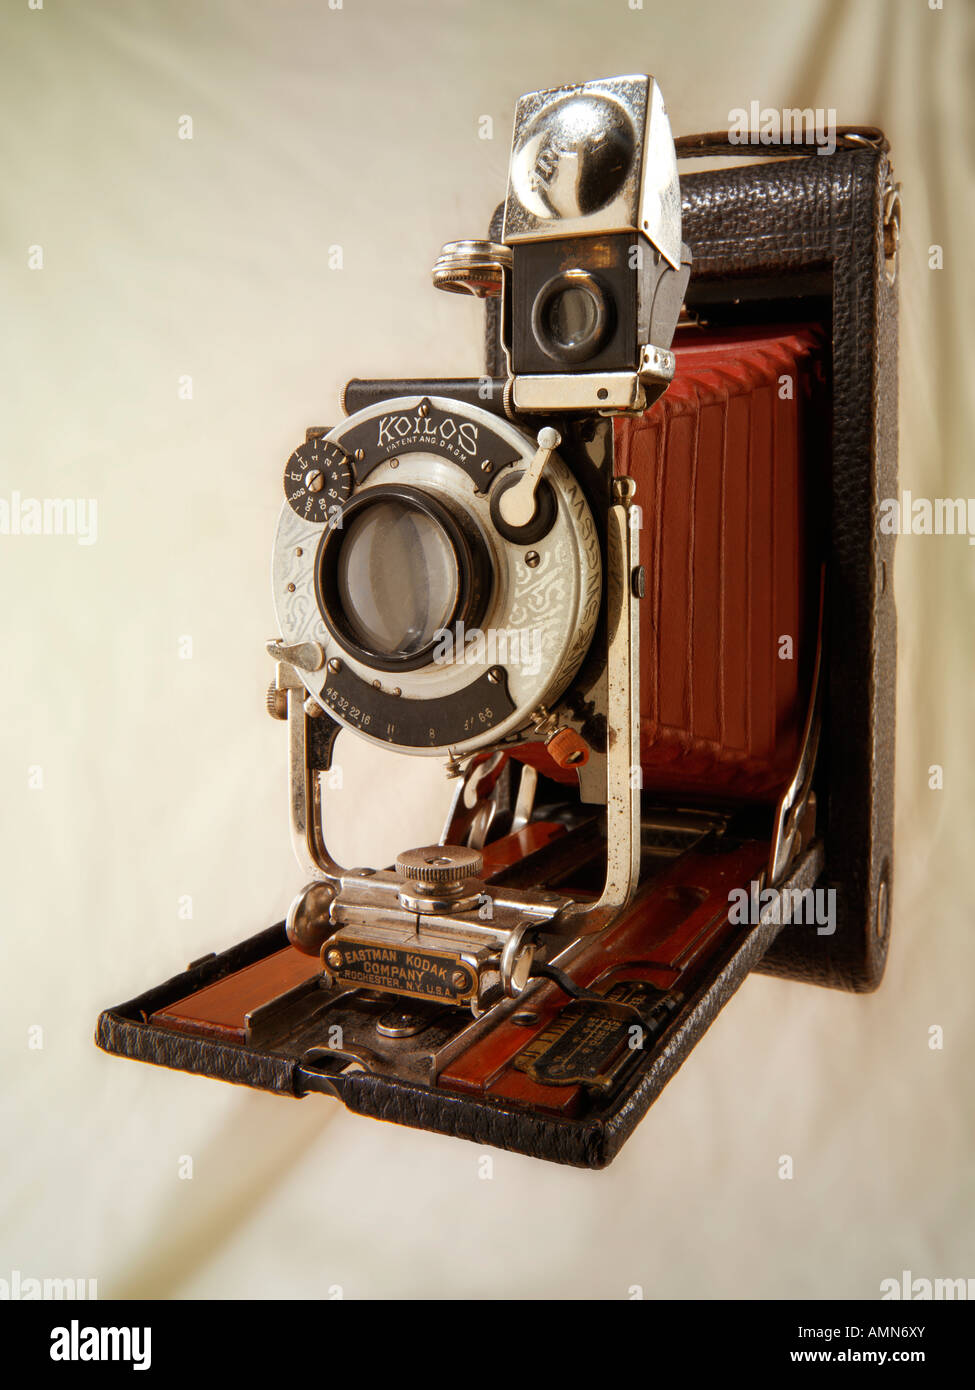 Kodak Brownie Kamera mit roten Falten Bälge Kolios-Verschluss Stockfoto